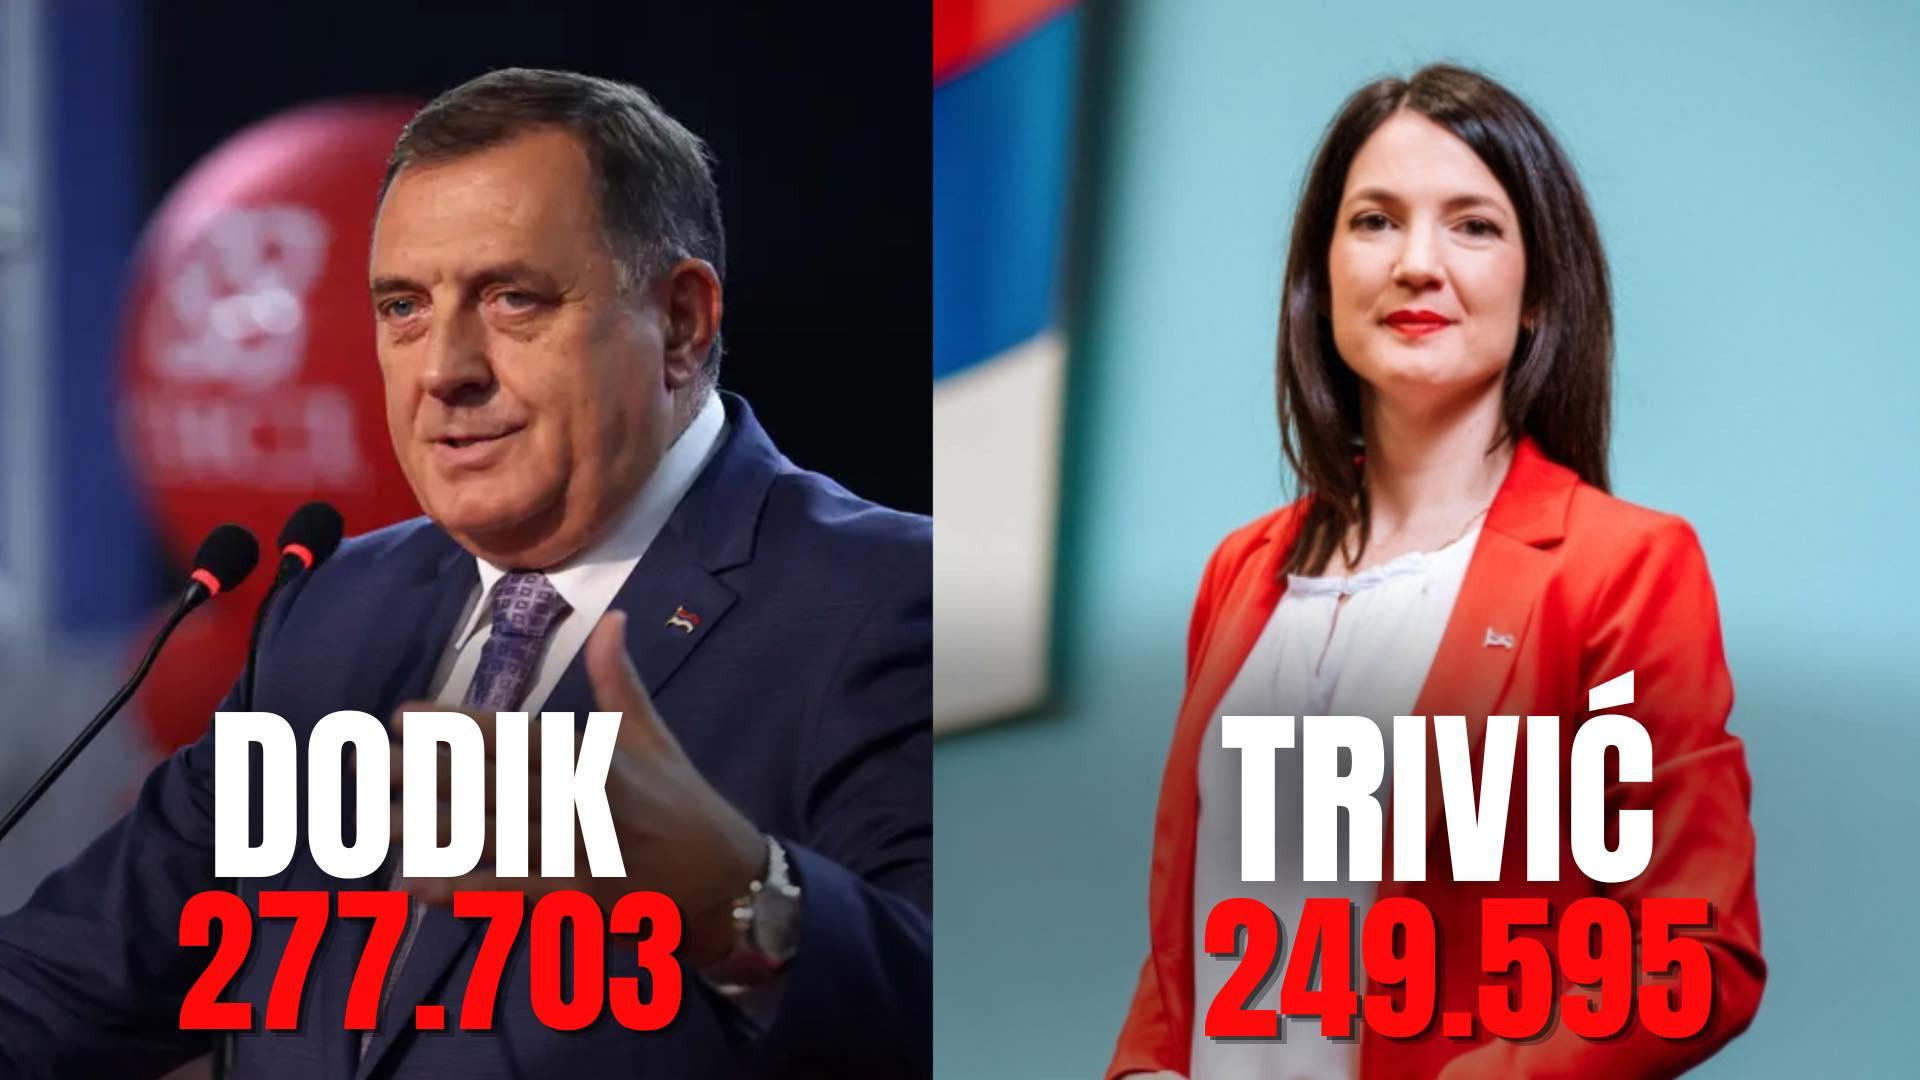 Dodik u odnosu na Trivić ima oko 28.000 glasova više - Avaz